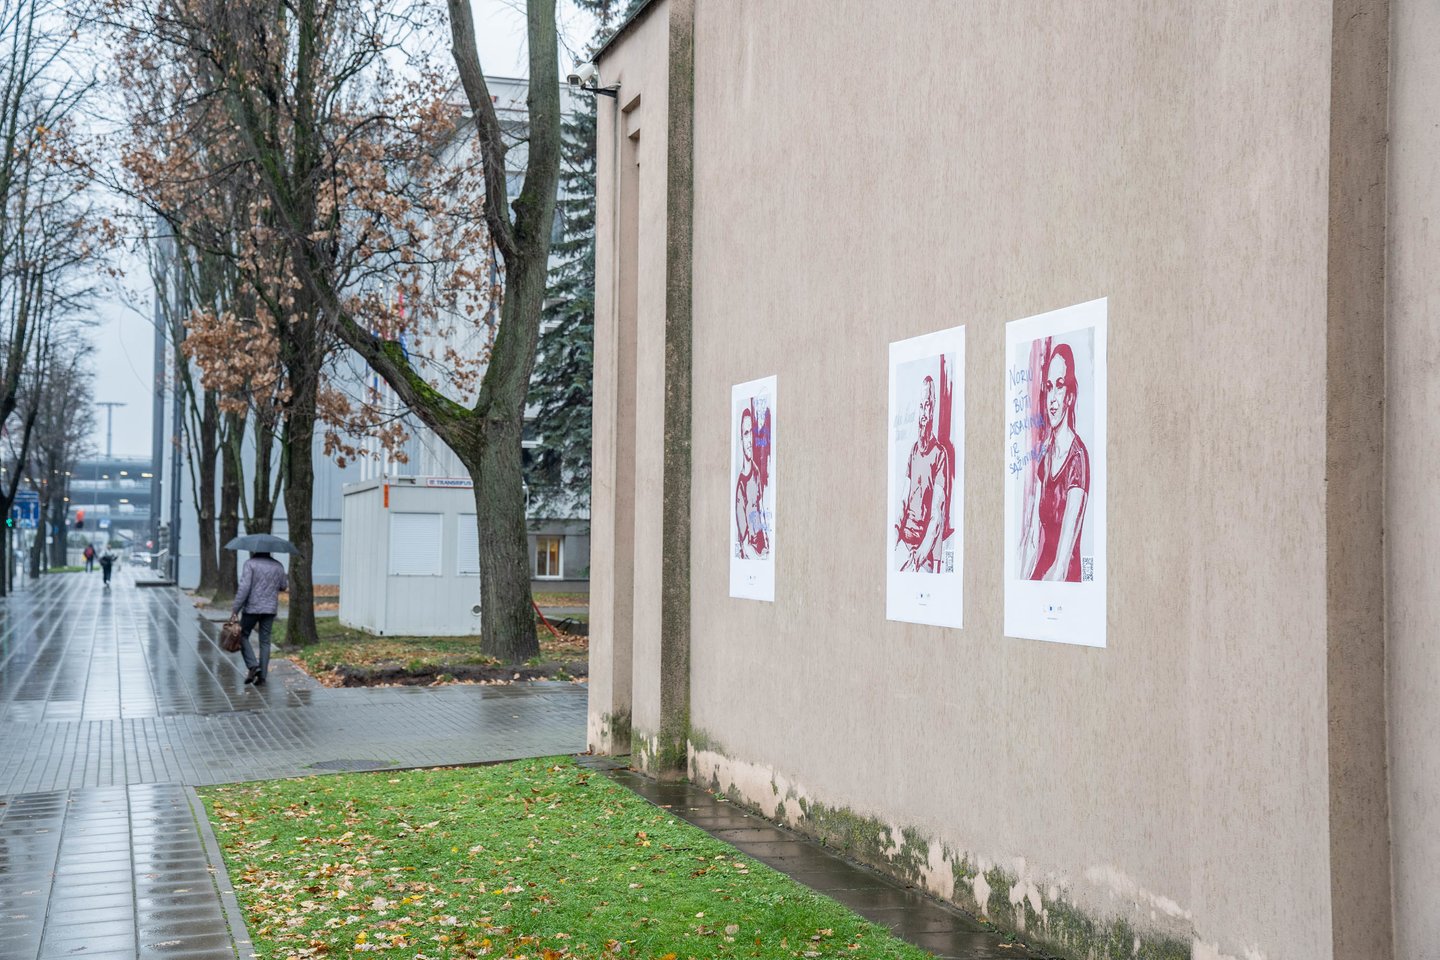 Menininkės plakatuose pavaizduoti pataisos namuose gyvenantys žmonės.<br>G.Bitvinsko nuotr.